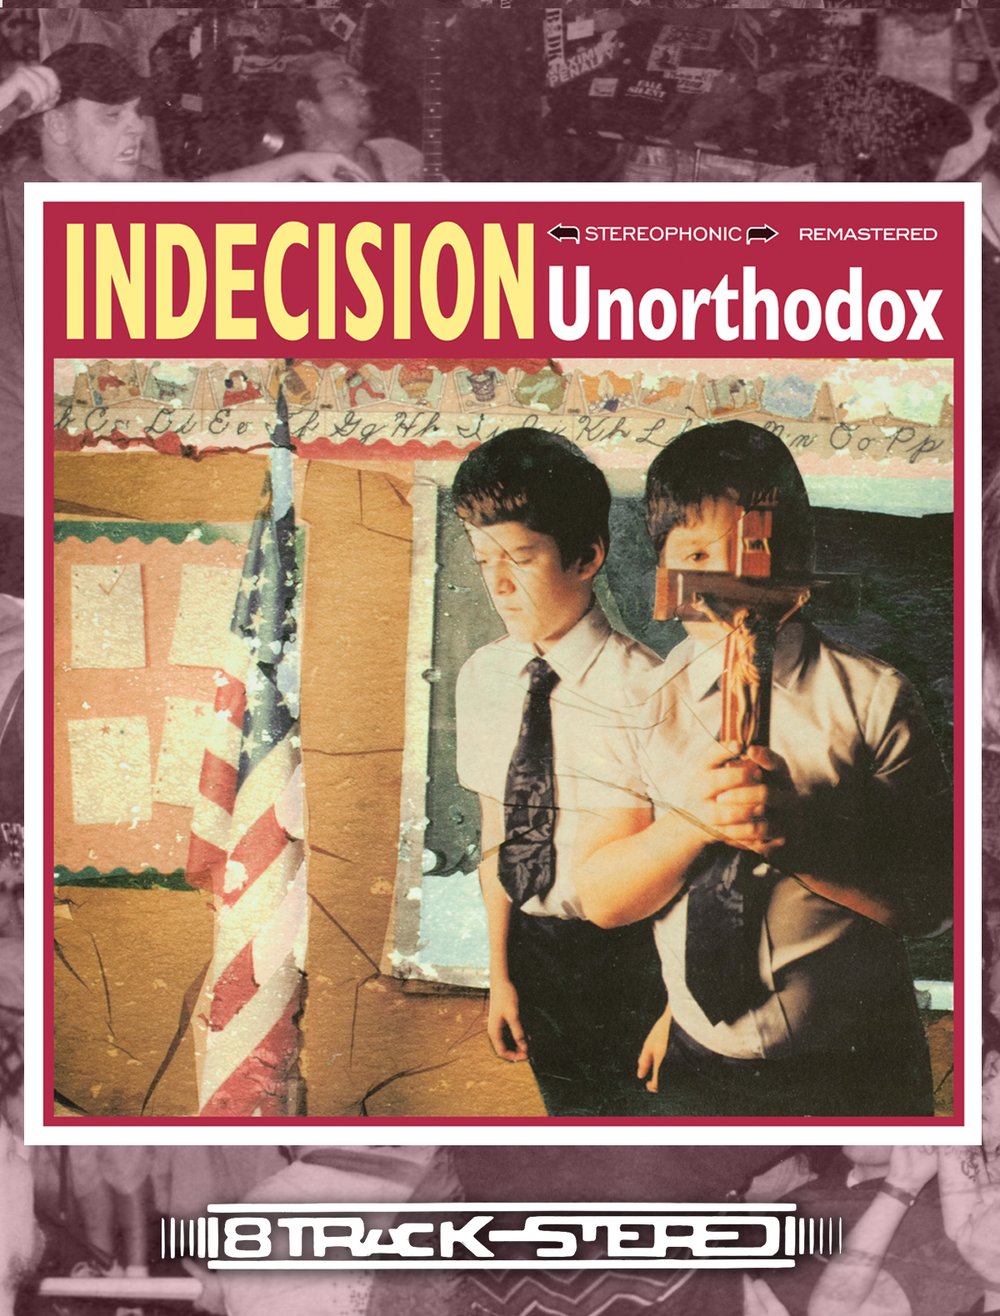 Indecision - Unorthodox 8 Track 